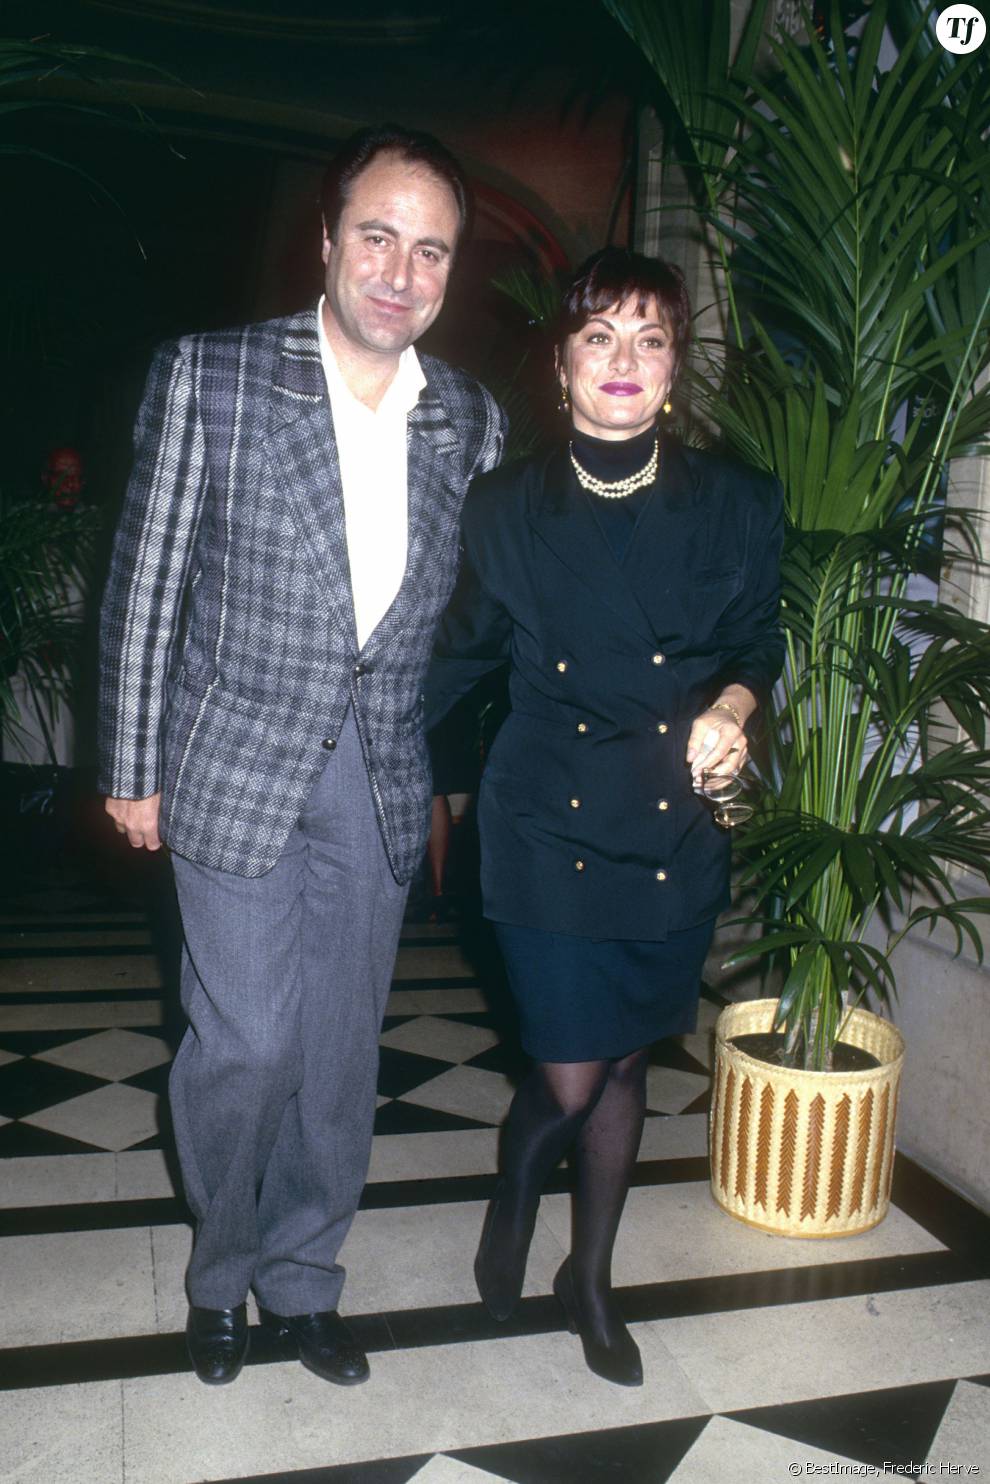 Michel Delpech et sa femme Geneviève en 1987